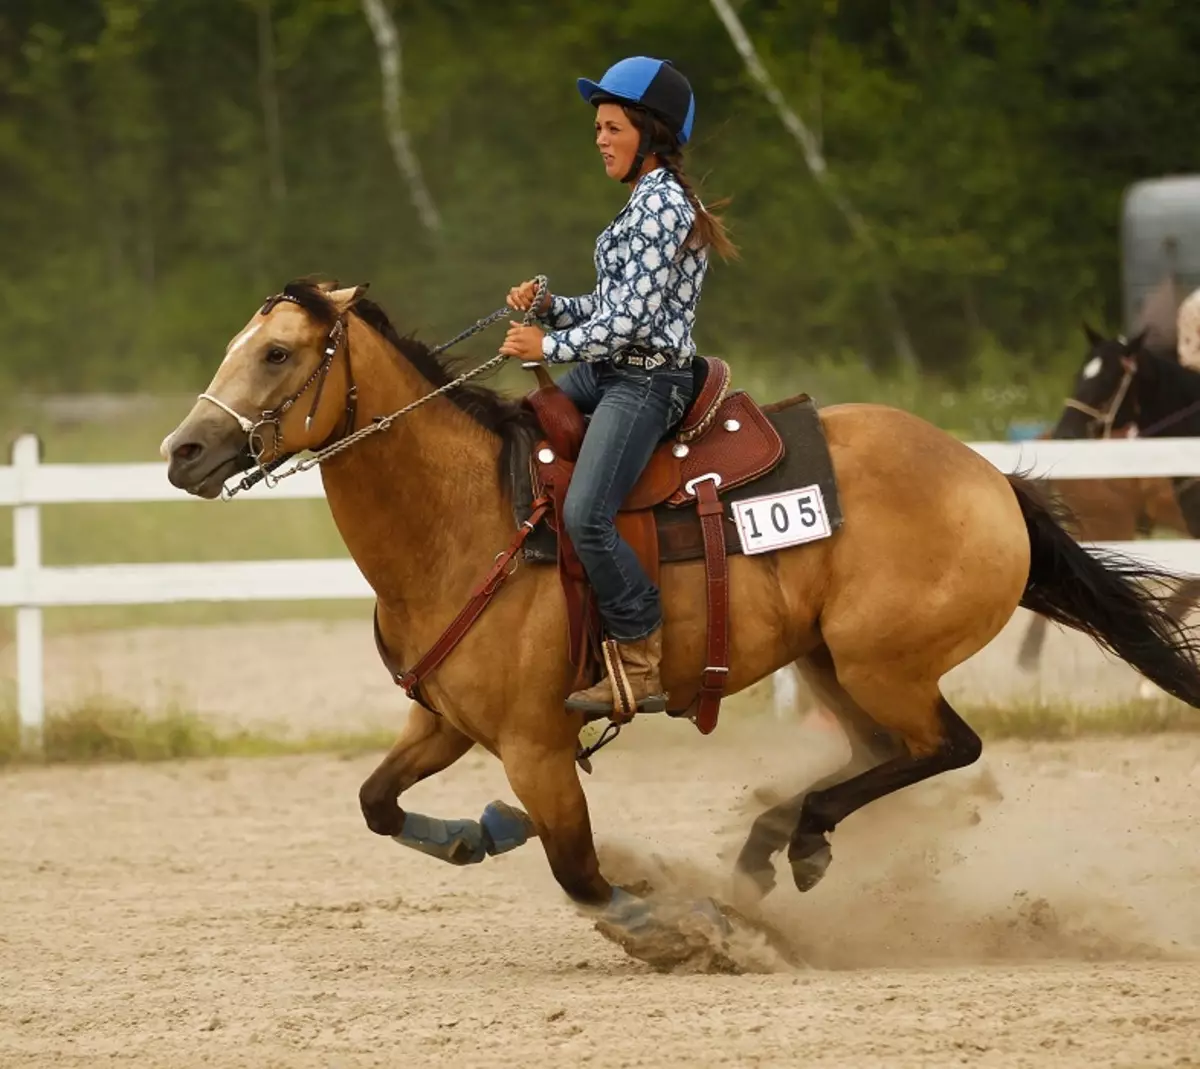 Cavalls corrents: Quin tipus de funcionament és considerat el més ràpid? Com estan els cavalls corren trot i allyr? La forma més ràpida i més incòmode de conduir un cavall 19169_4